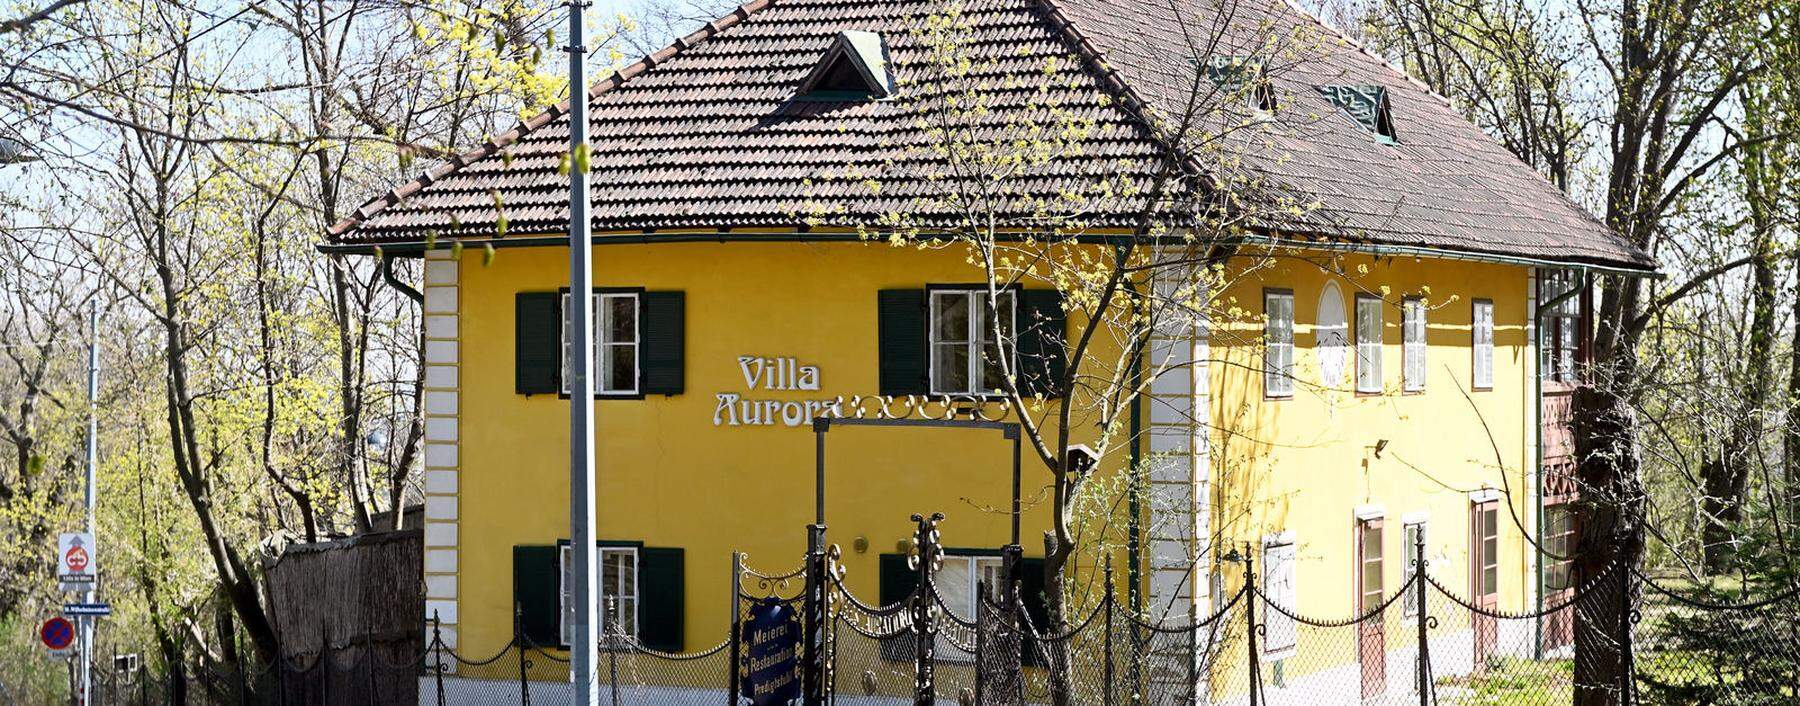 Weiter geschlossen: Die neuen Eigentümer wollen in der Villa Aurora wieder einen Gastronomiebetrieb eröffnen.